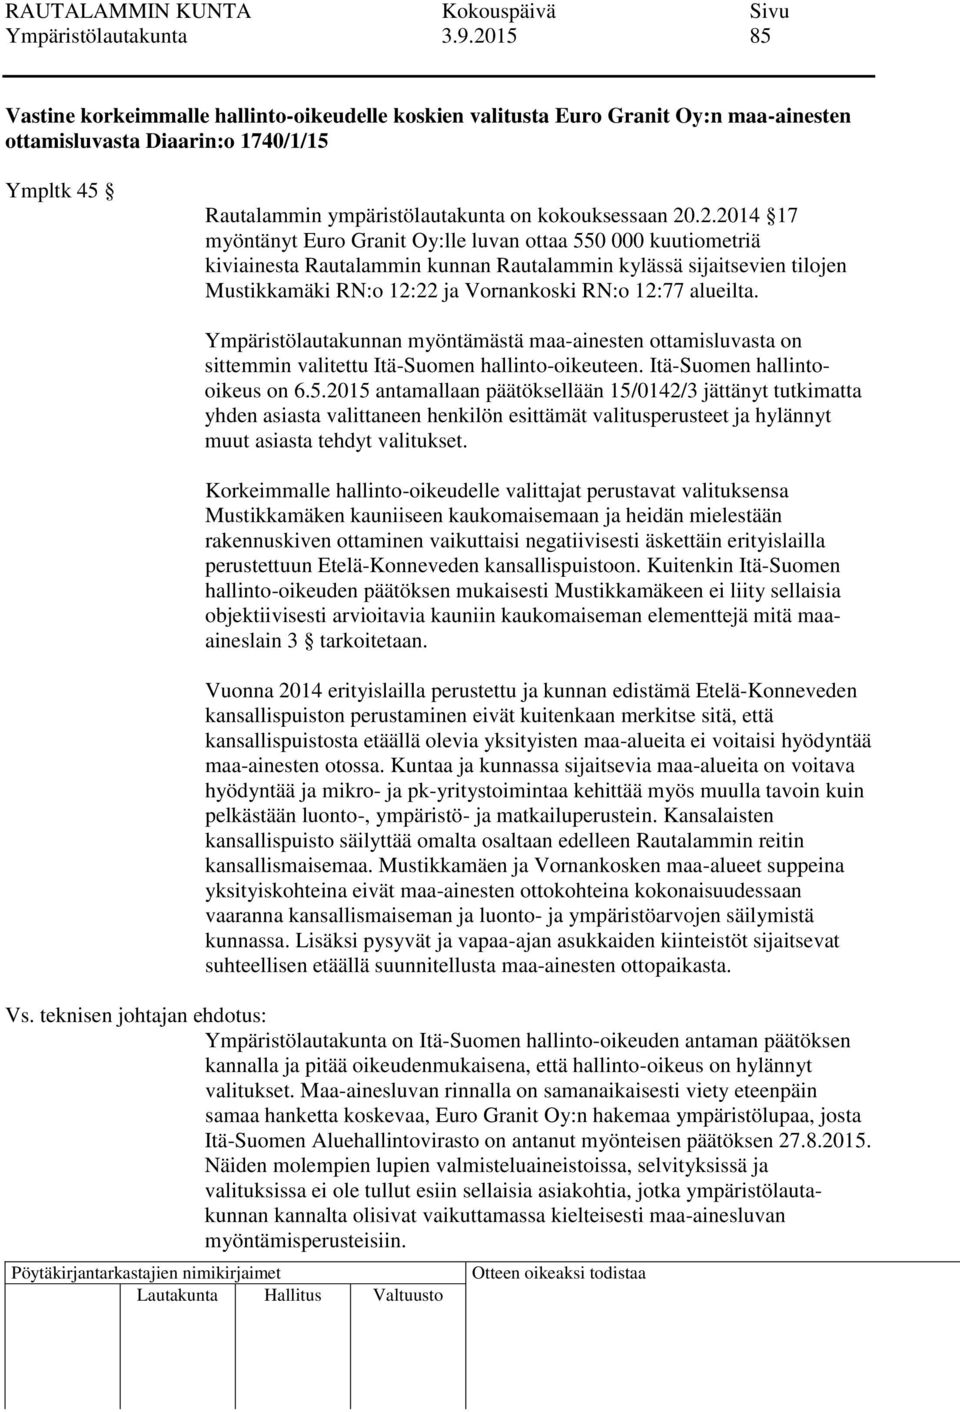 20.2.2014 17 myöntänyt Euro Granit Oy:lle luvan ottaa 550 000 kuutiometriä kiviainesta Rautalammin kunnan Rautalammin kylässä sijaitsevien tilojen Mustikkamäki RN:o 12:22 ja Vornankoski RN:o 12:77